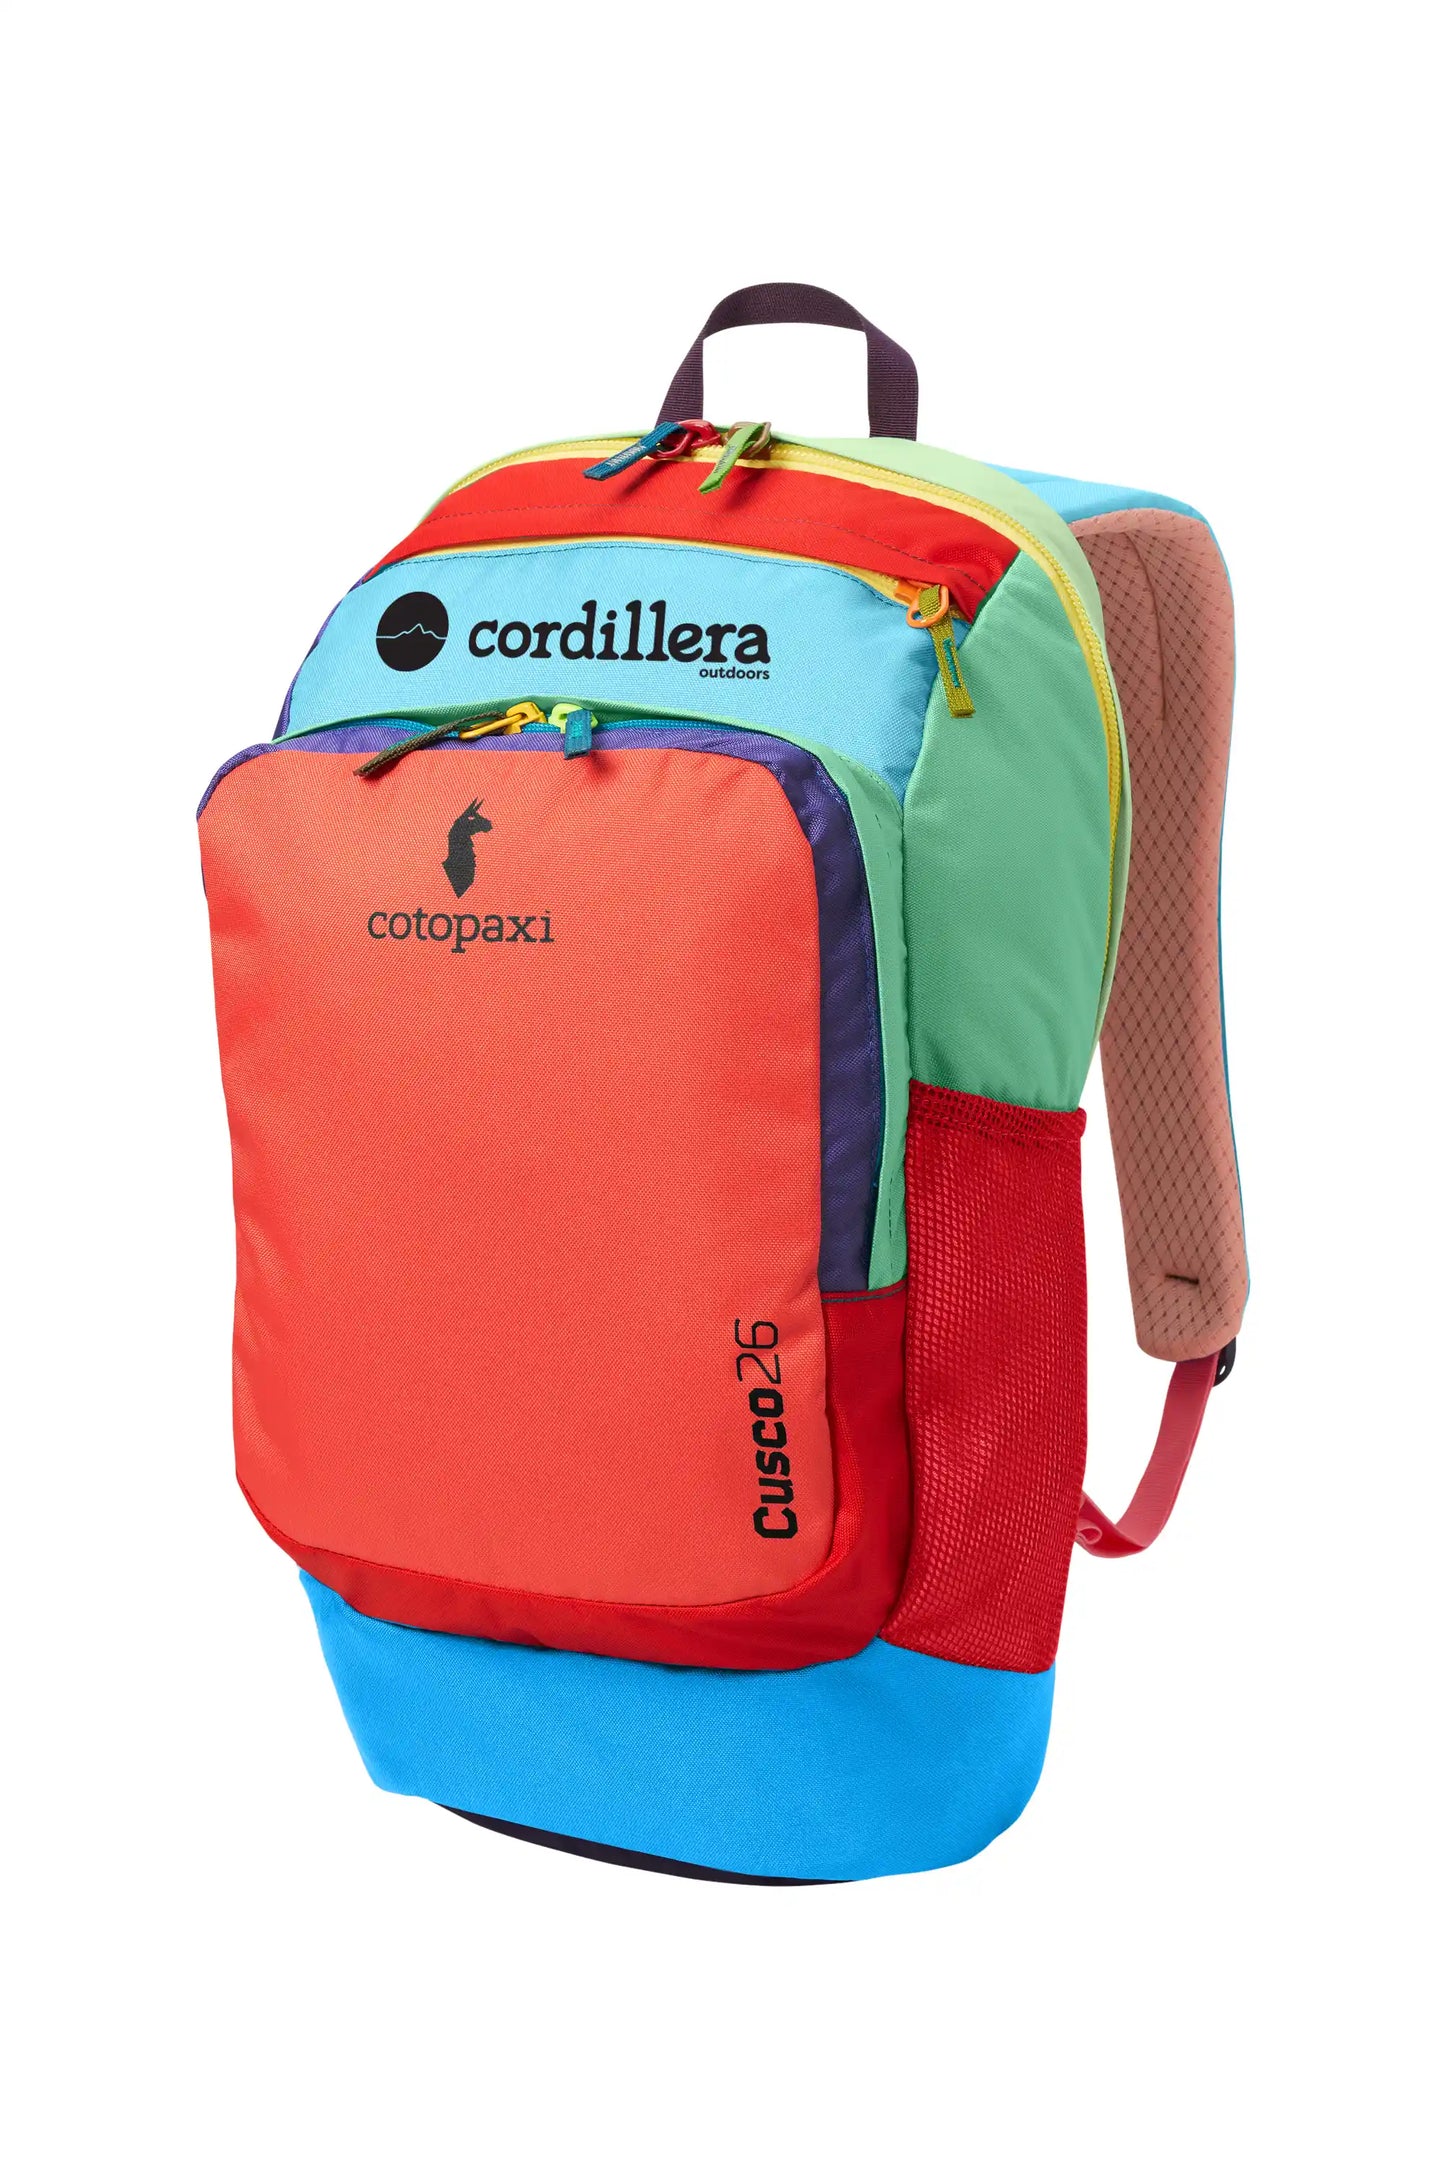 Cordillera + Cotopaxi Backpack - Cusco 26L